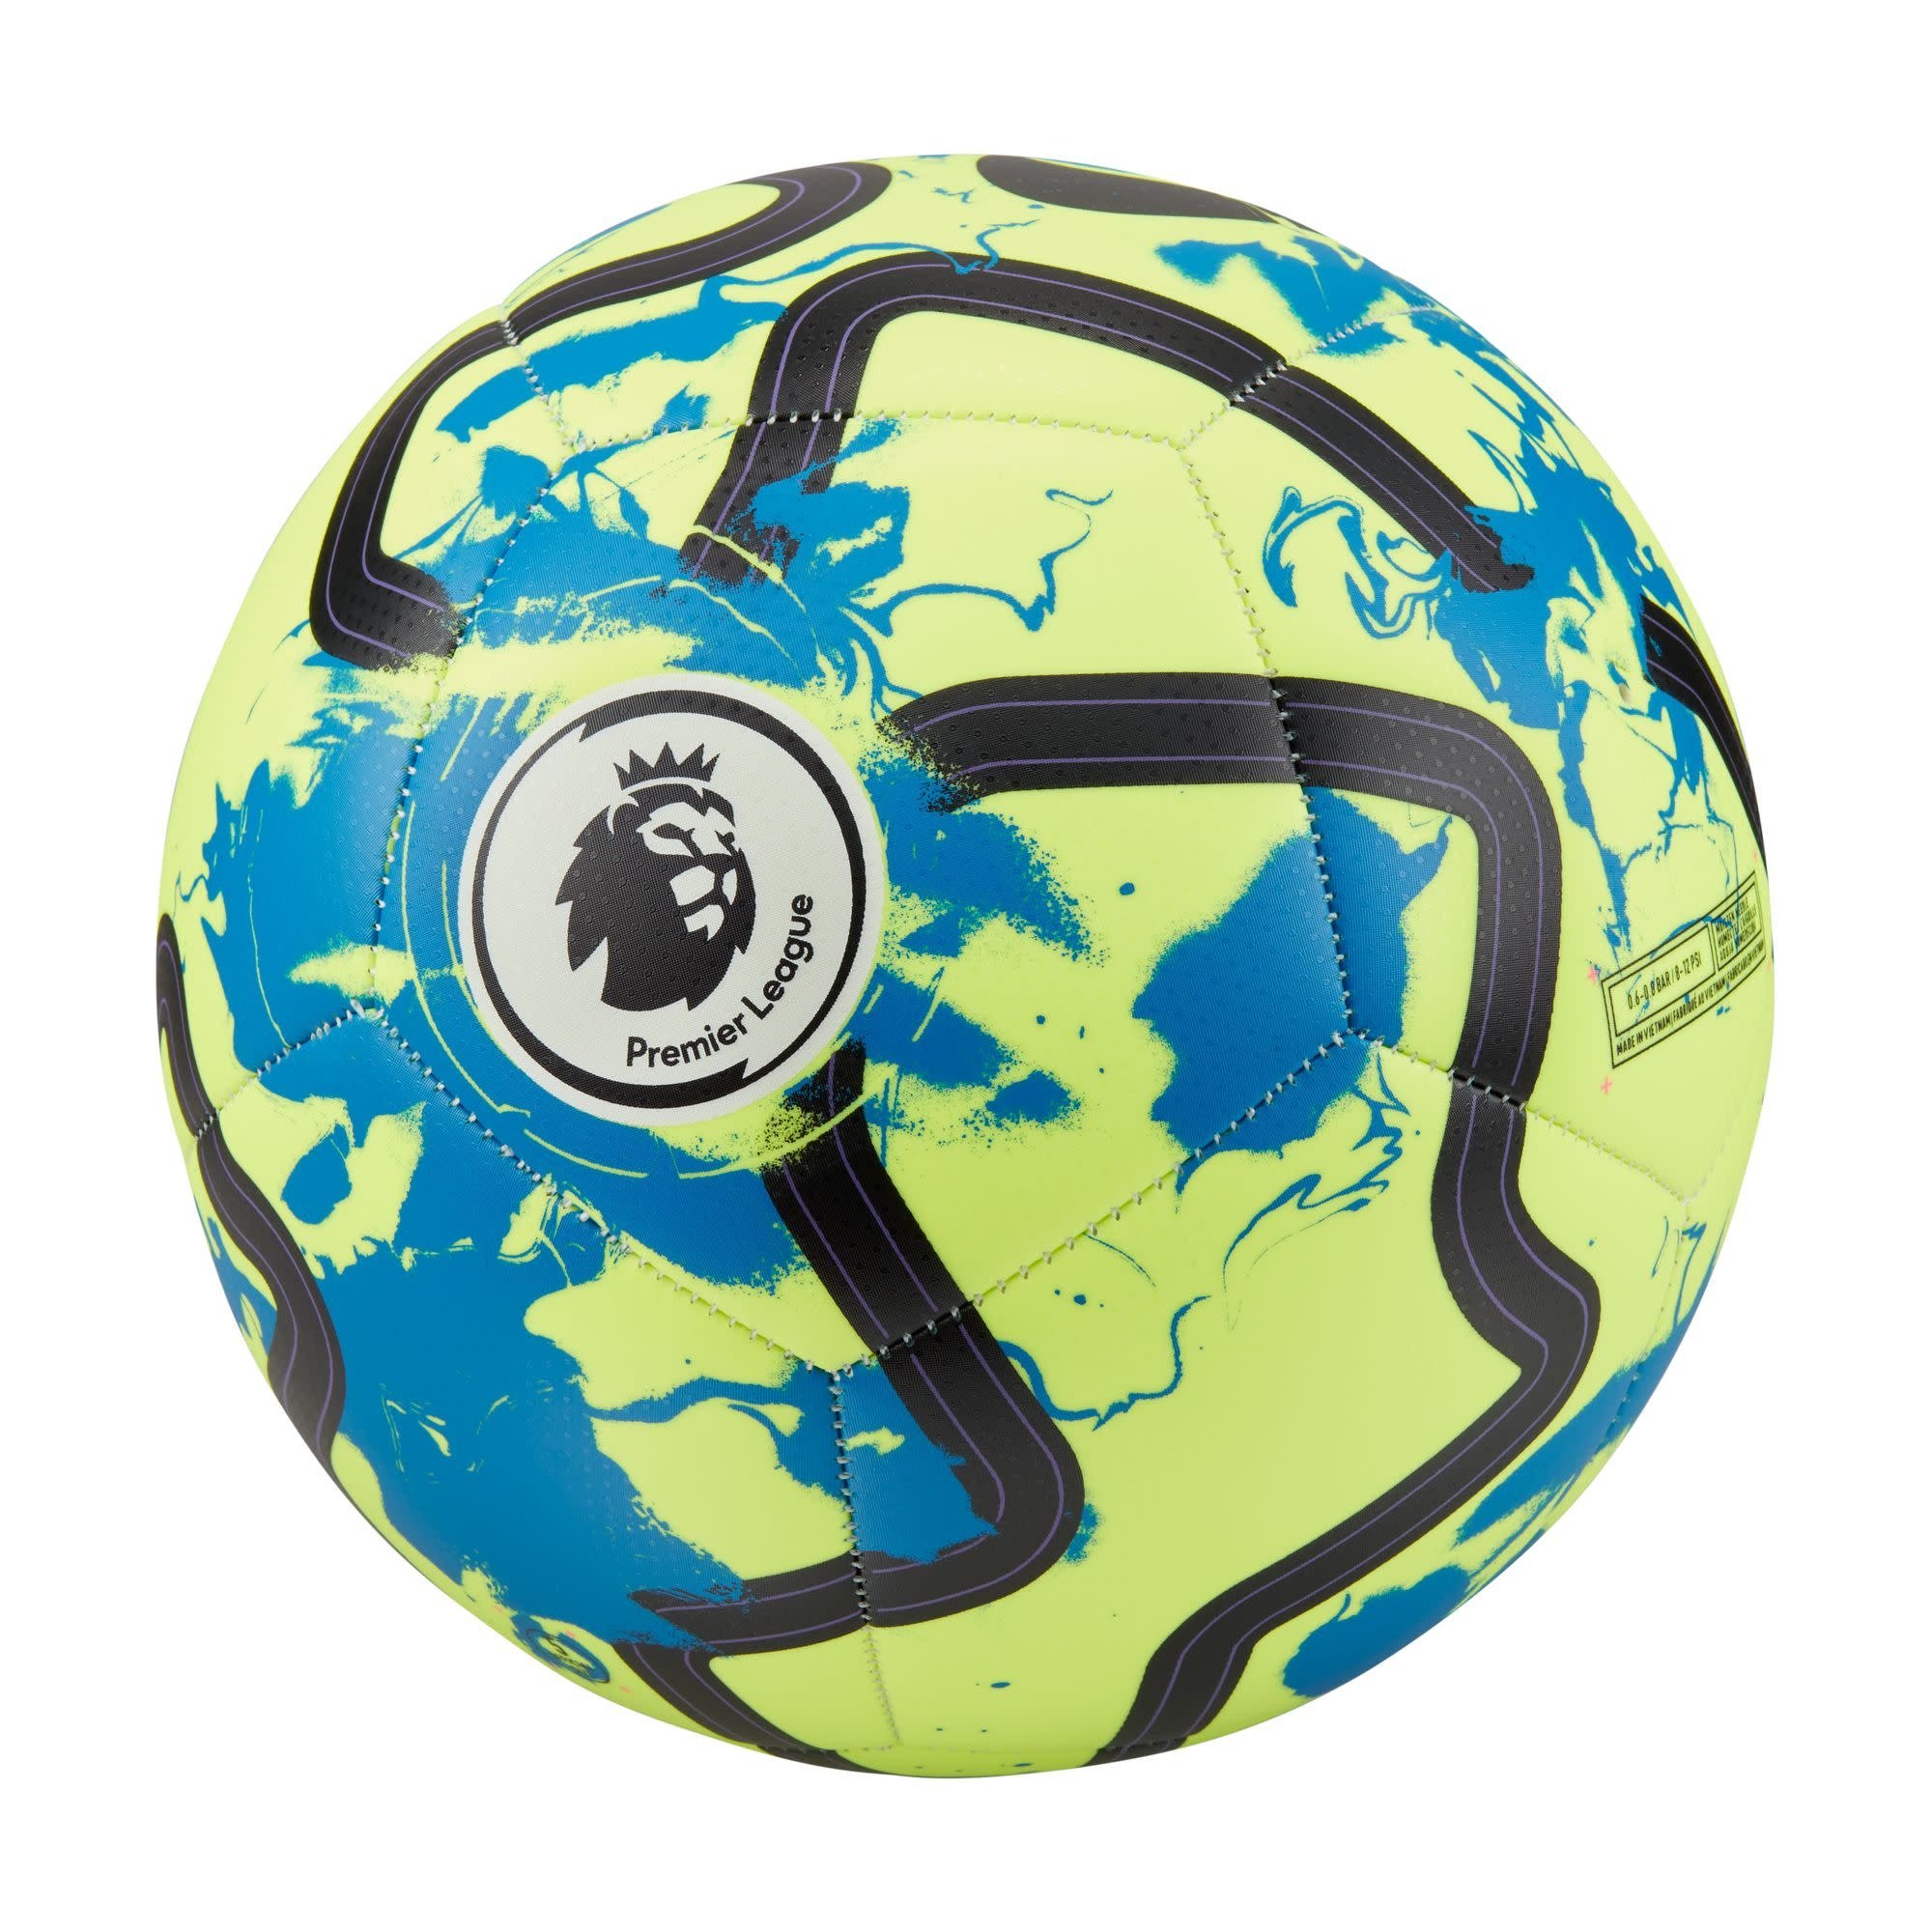 Nike Flight 2023-2024 Premier League soccer ball official match ball size 5